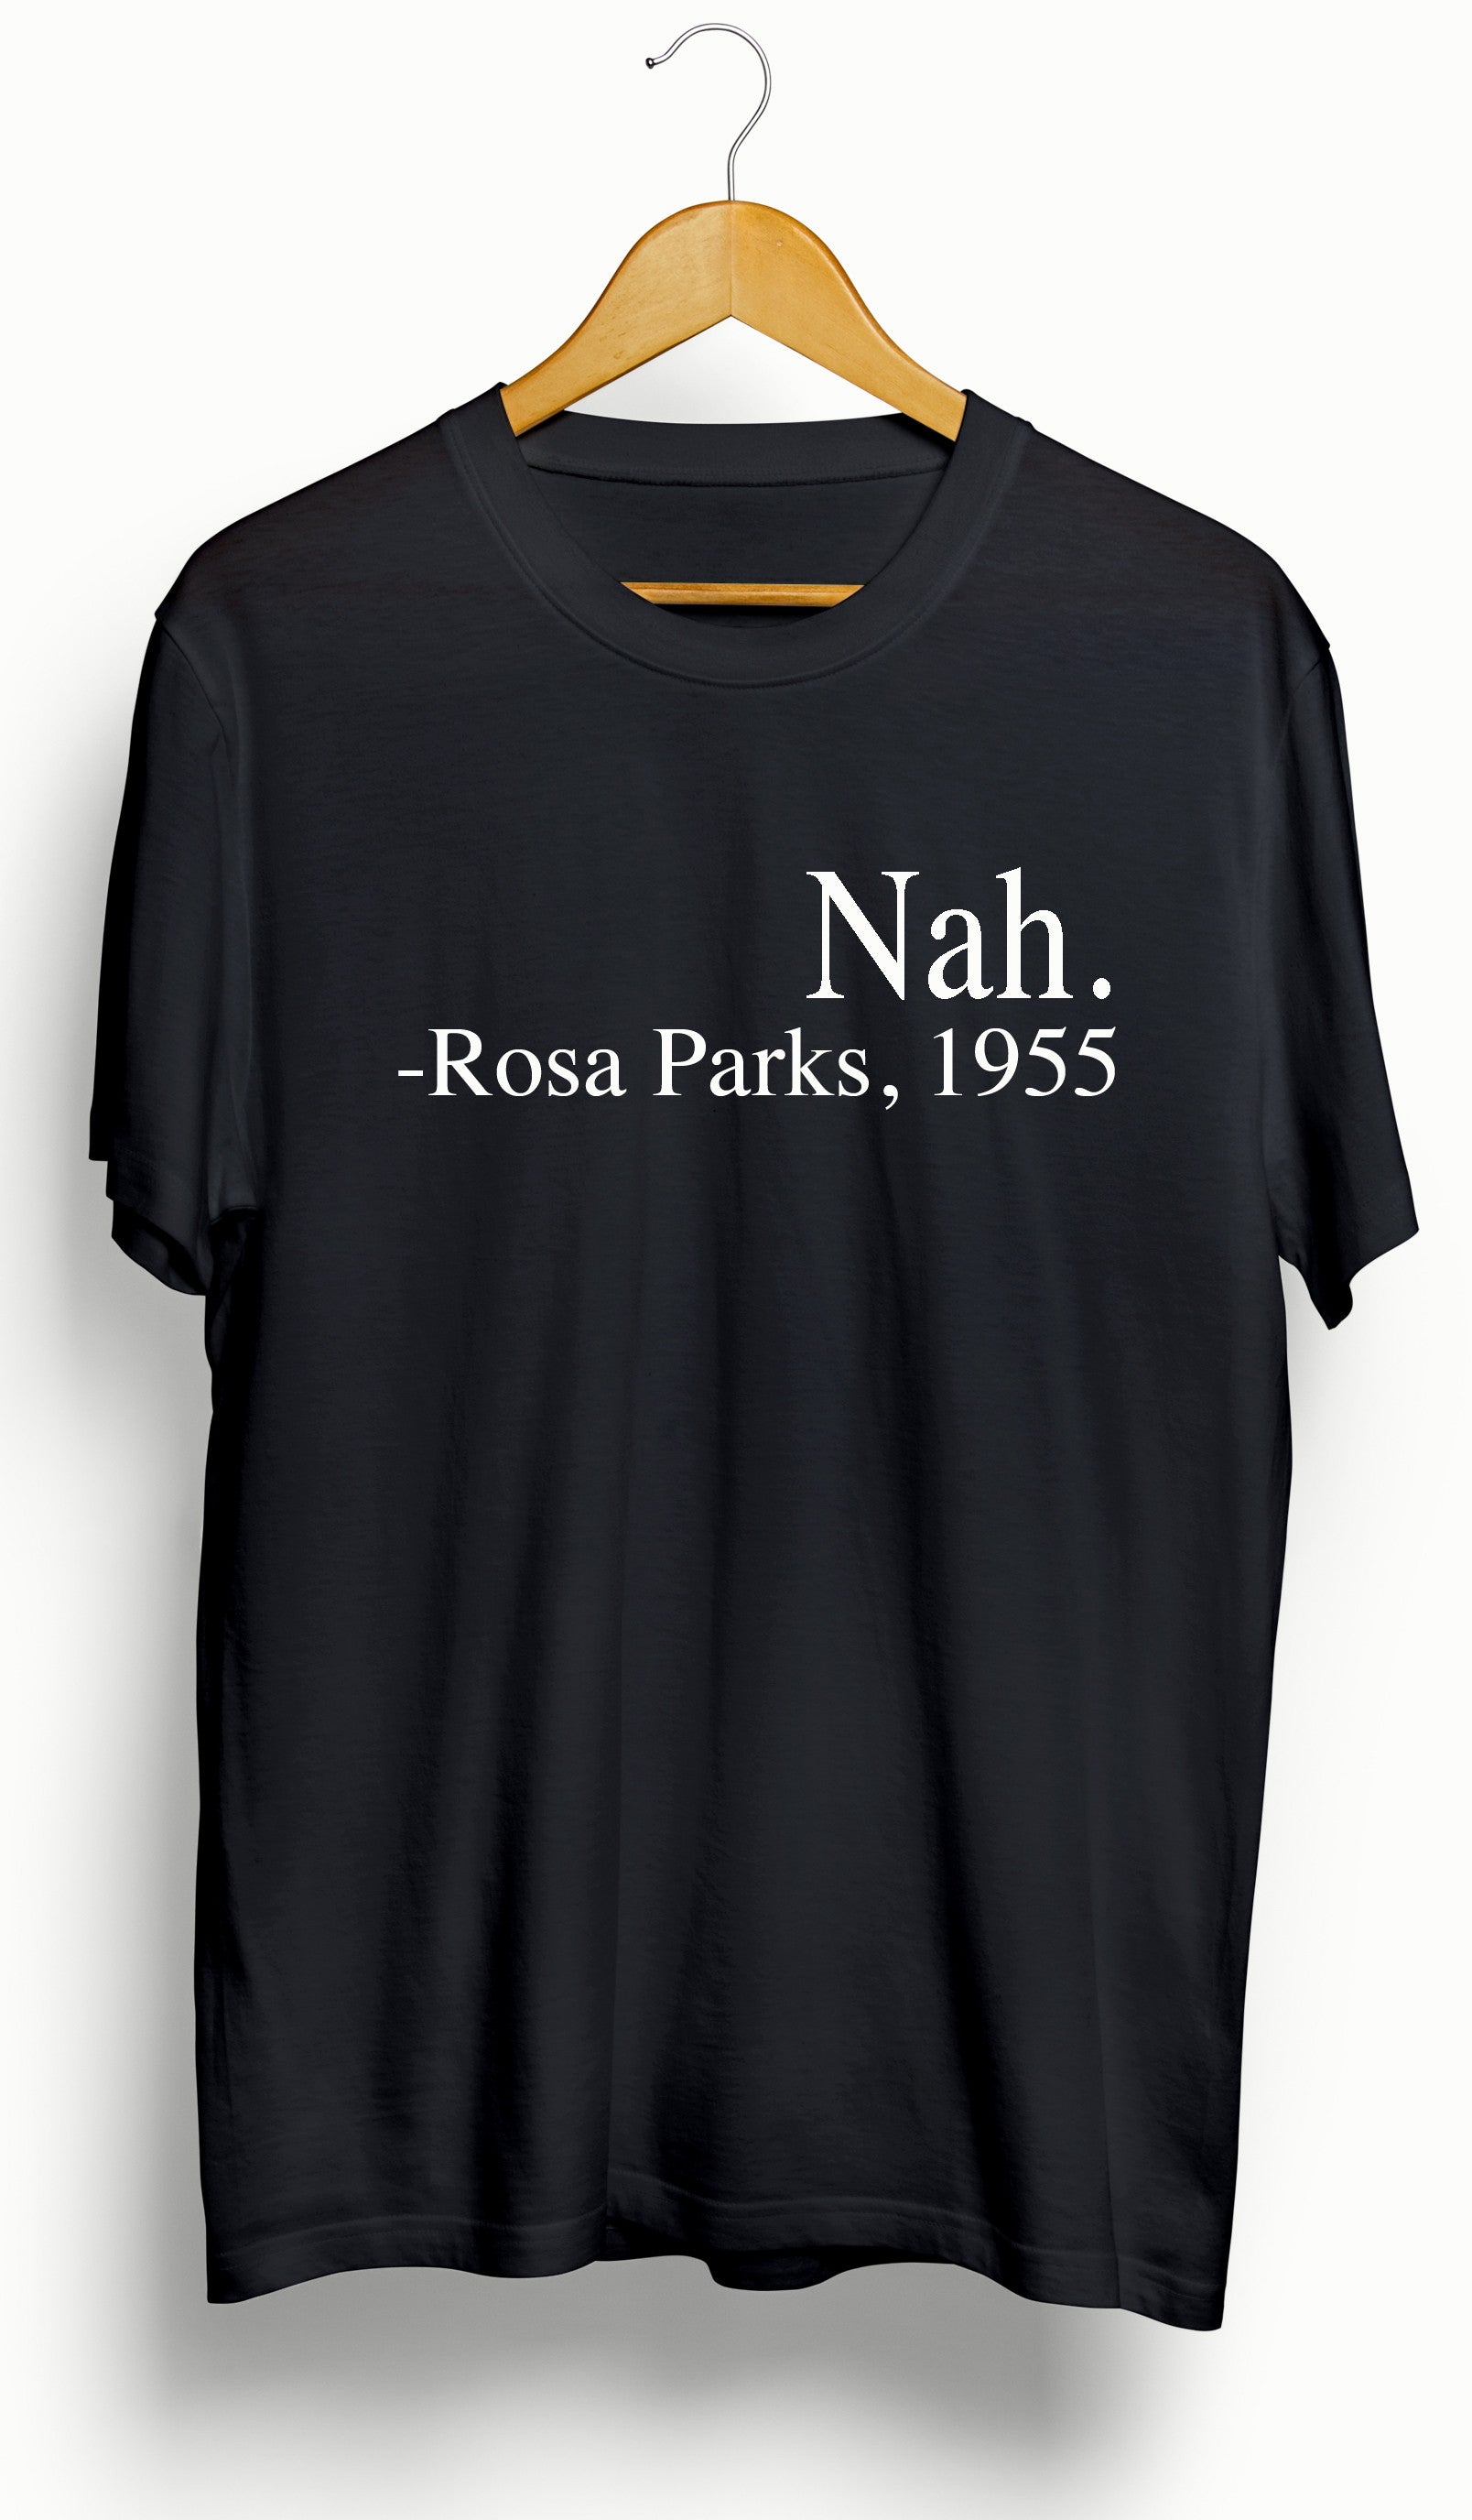 Rosa Parks &quot;Nah&quot; T-Shirt - Ourt